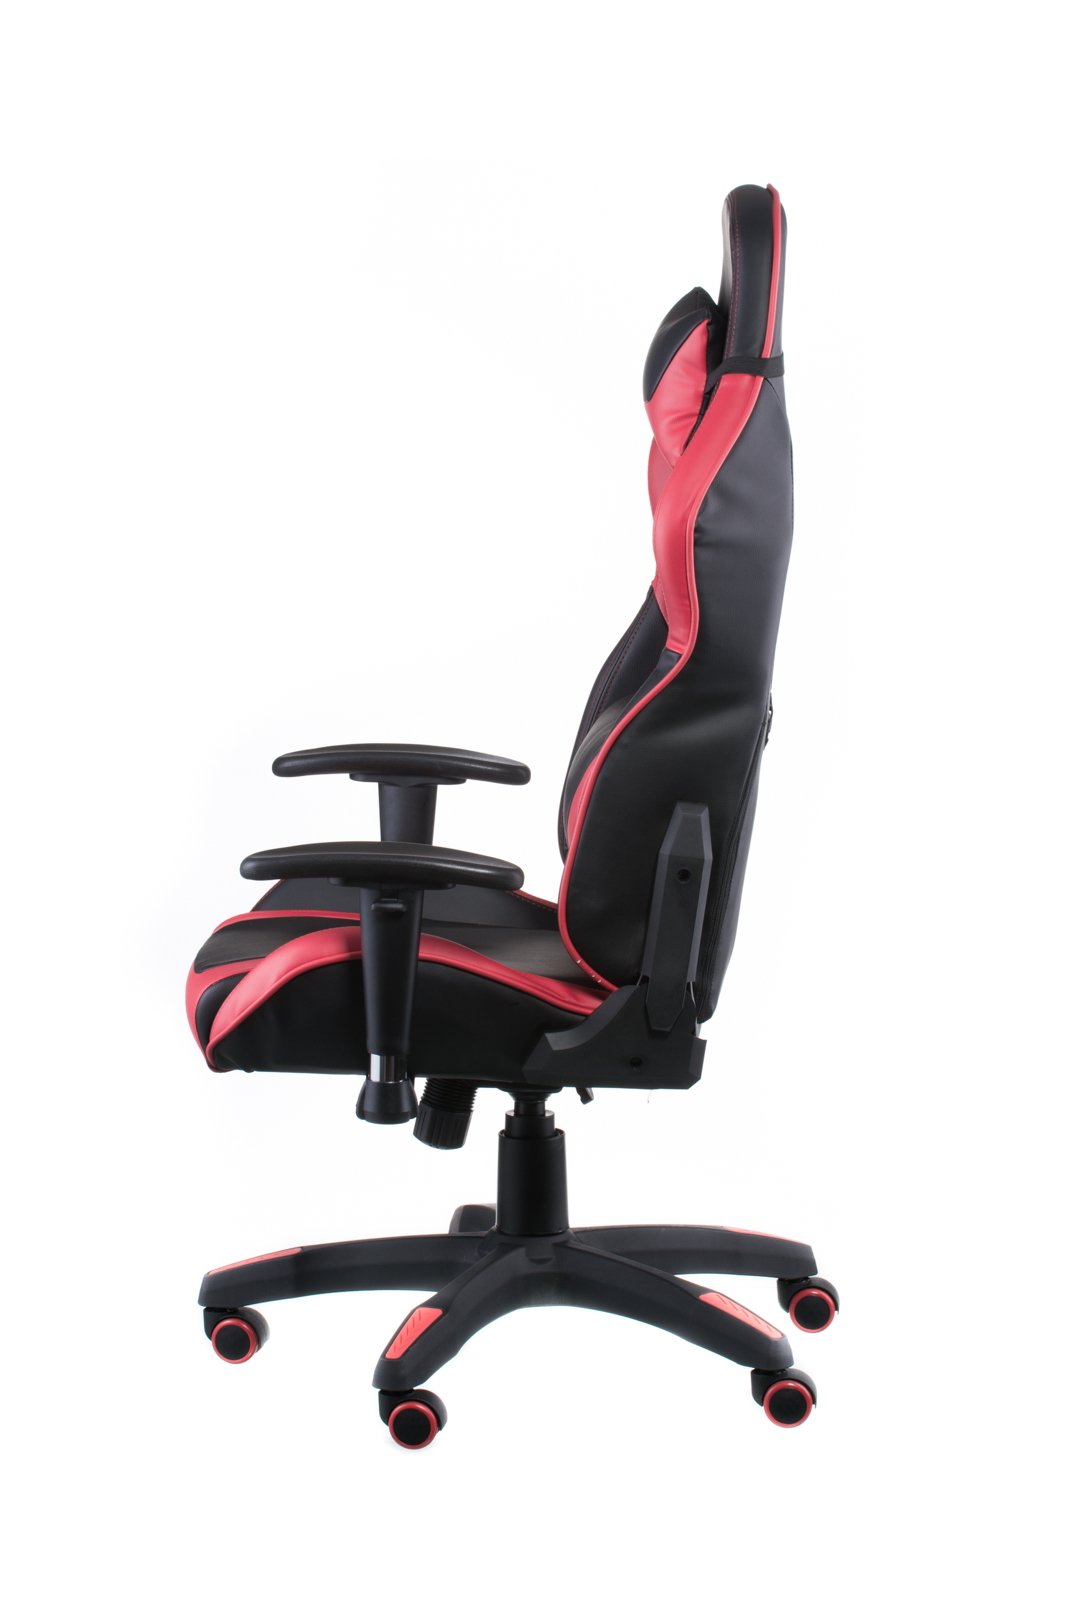 Геймерское кресло Special4you ExtremeRace черное с красным (E4930) - фото 3